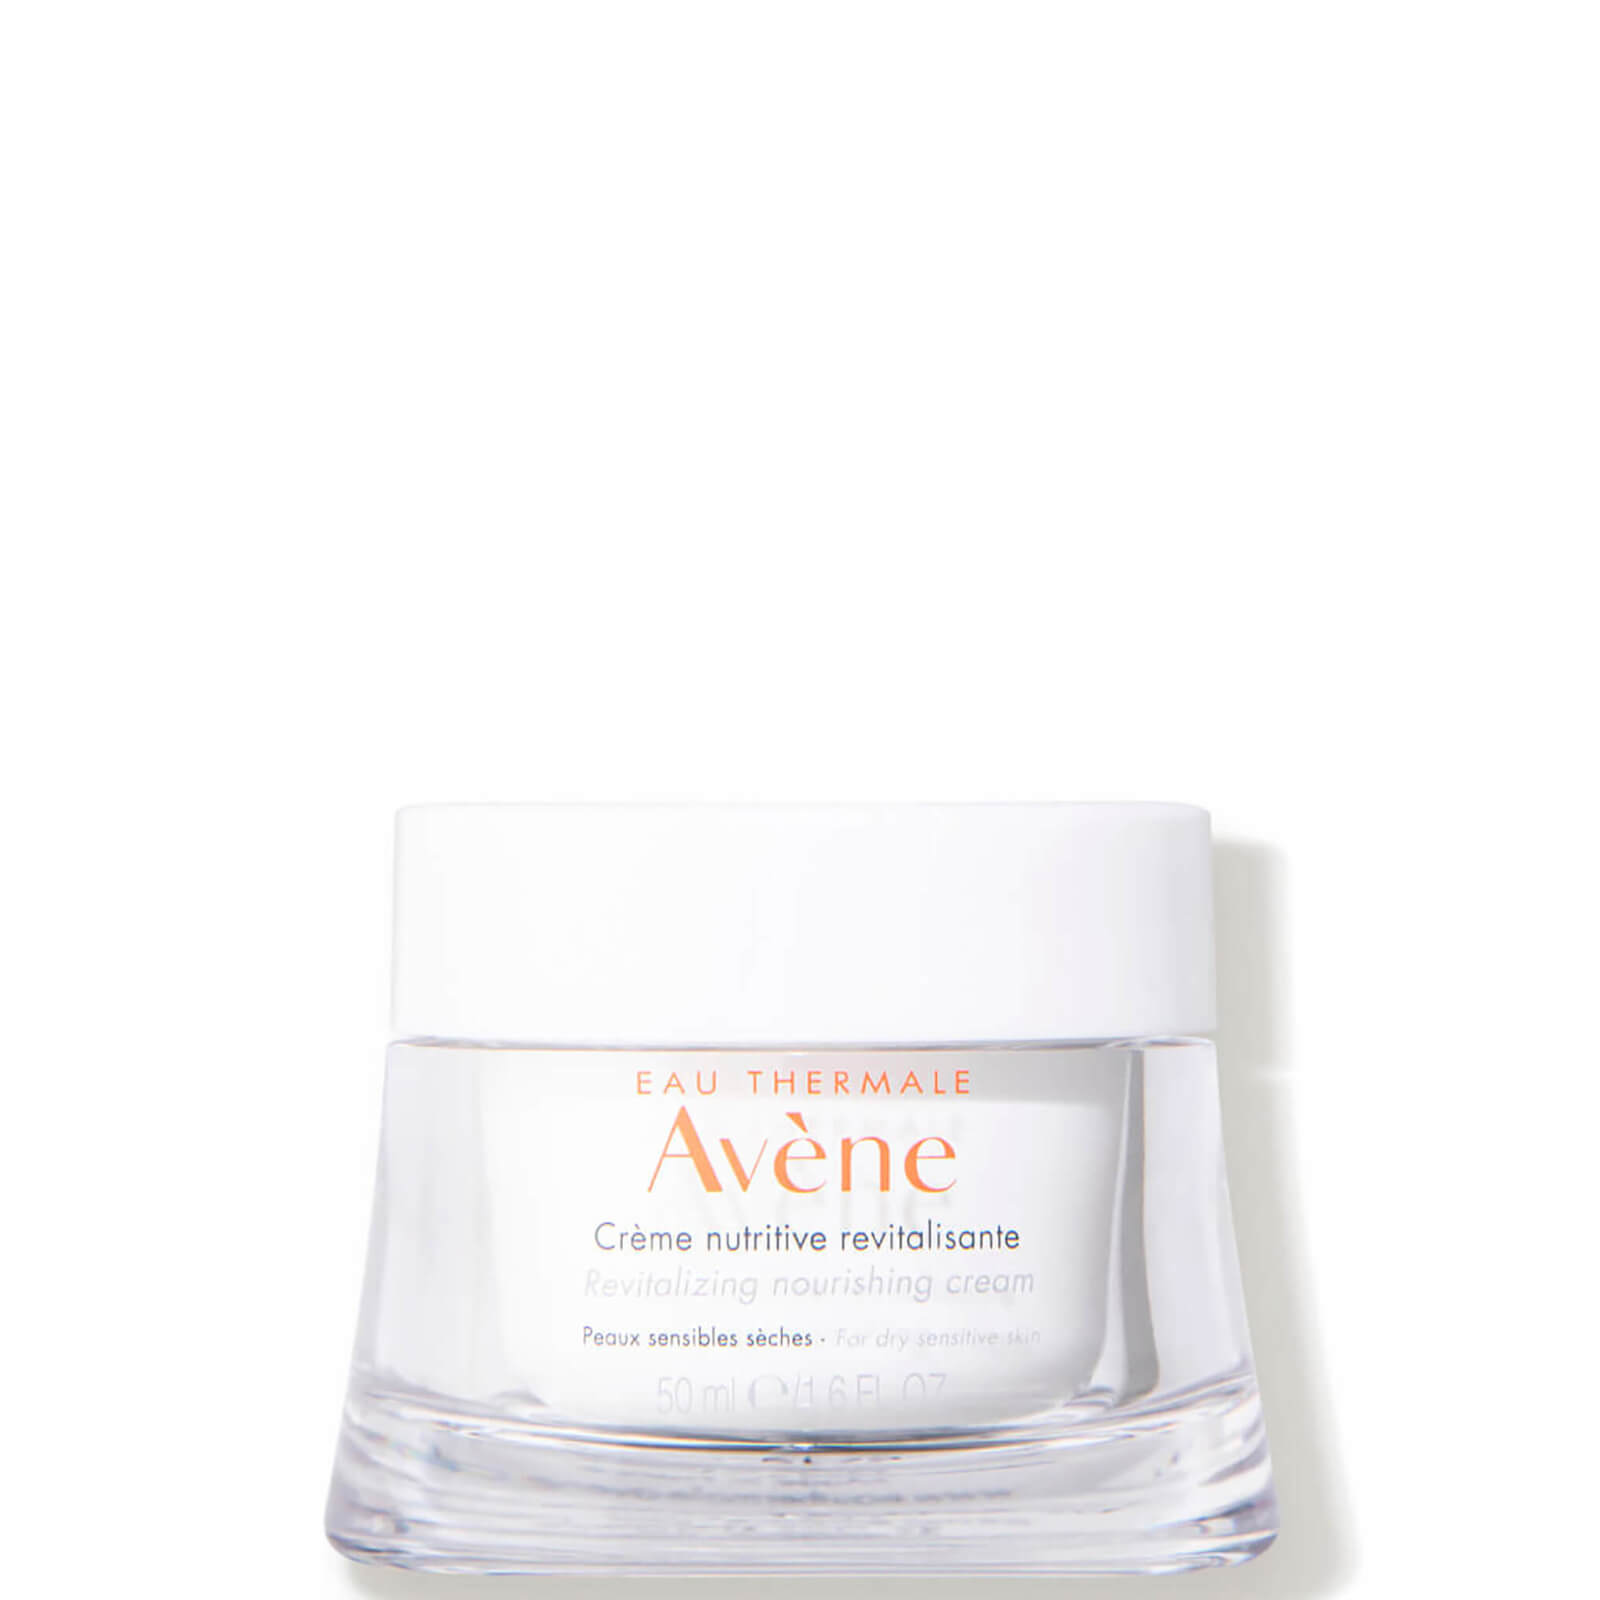 Avene Les Essentiels Revitalizing Nourishing Cream Moisturiser for Dry, Sensitive Skin 50ml